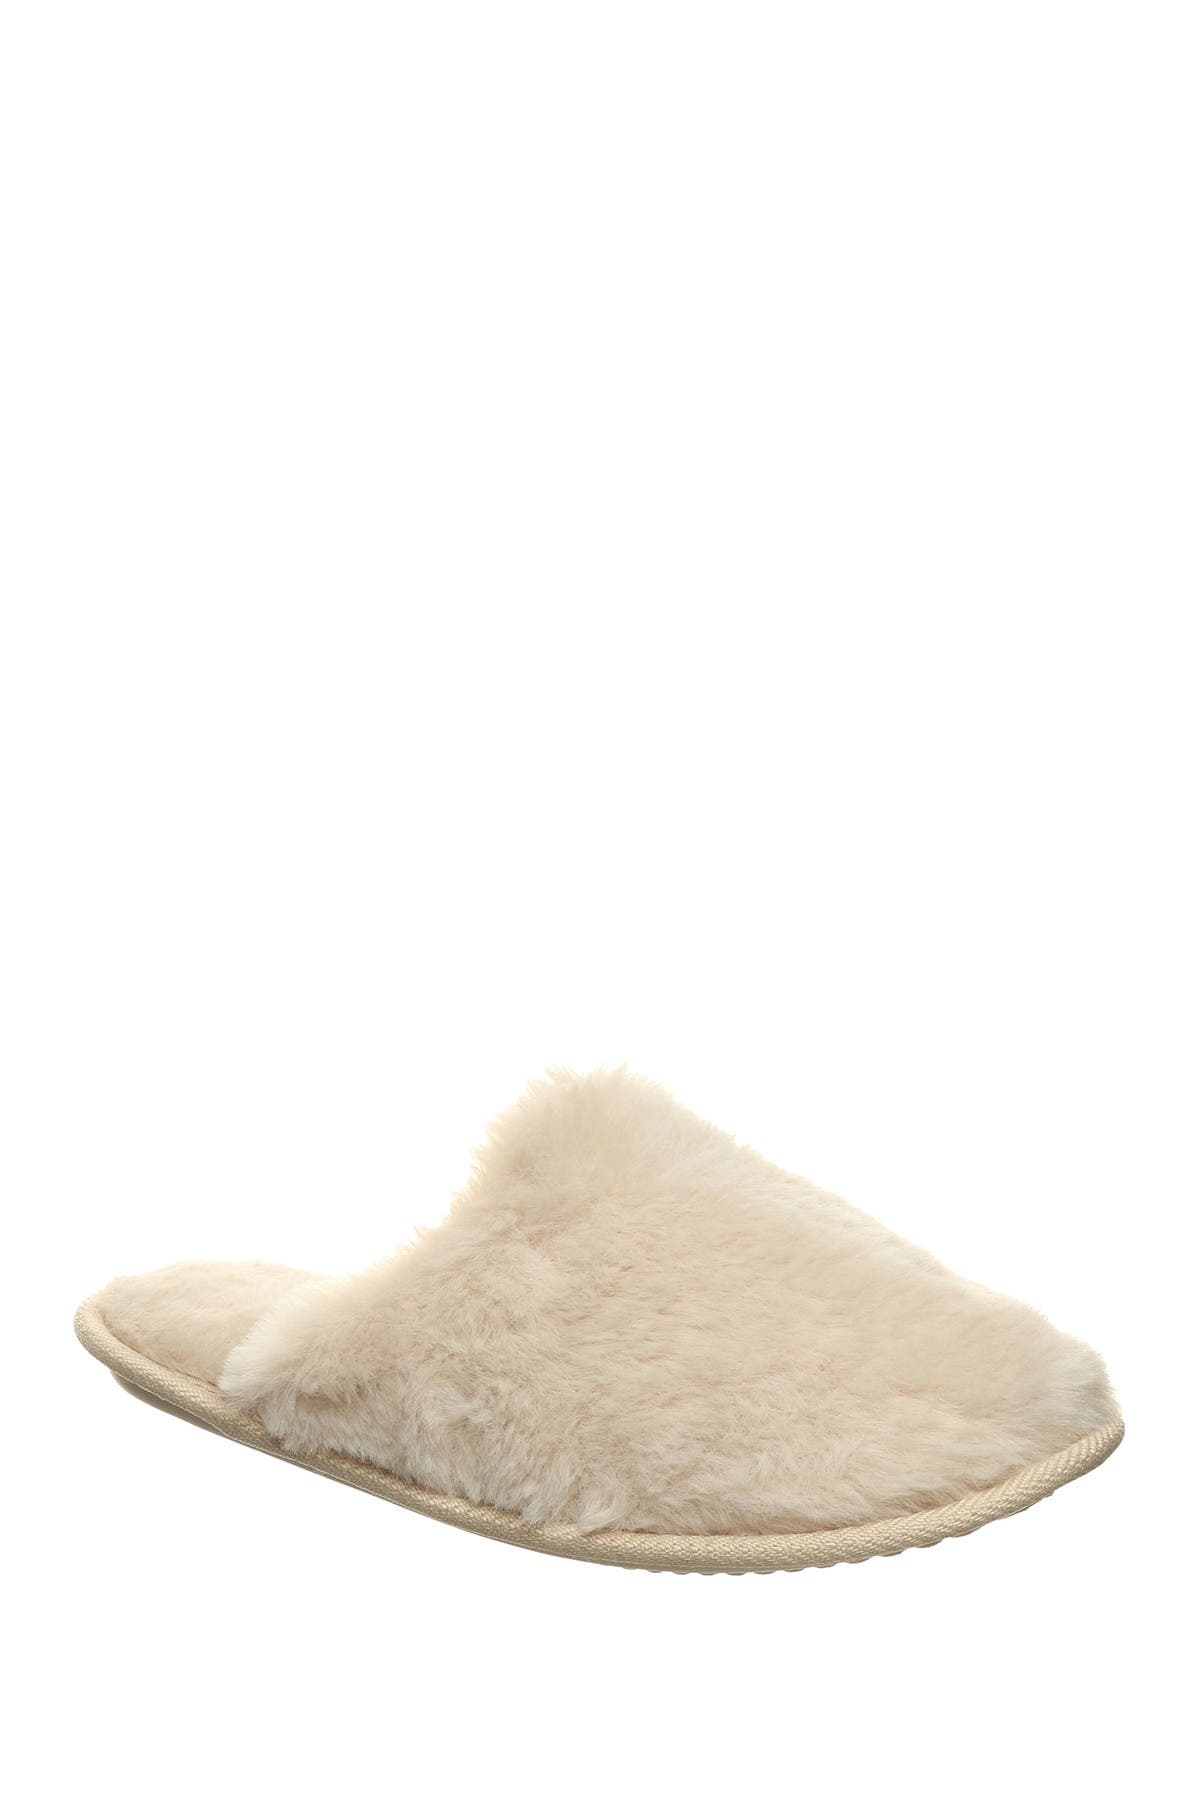 bearpaw fuzzy sandals